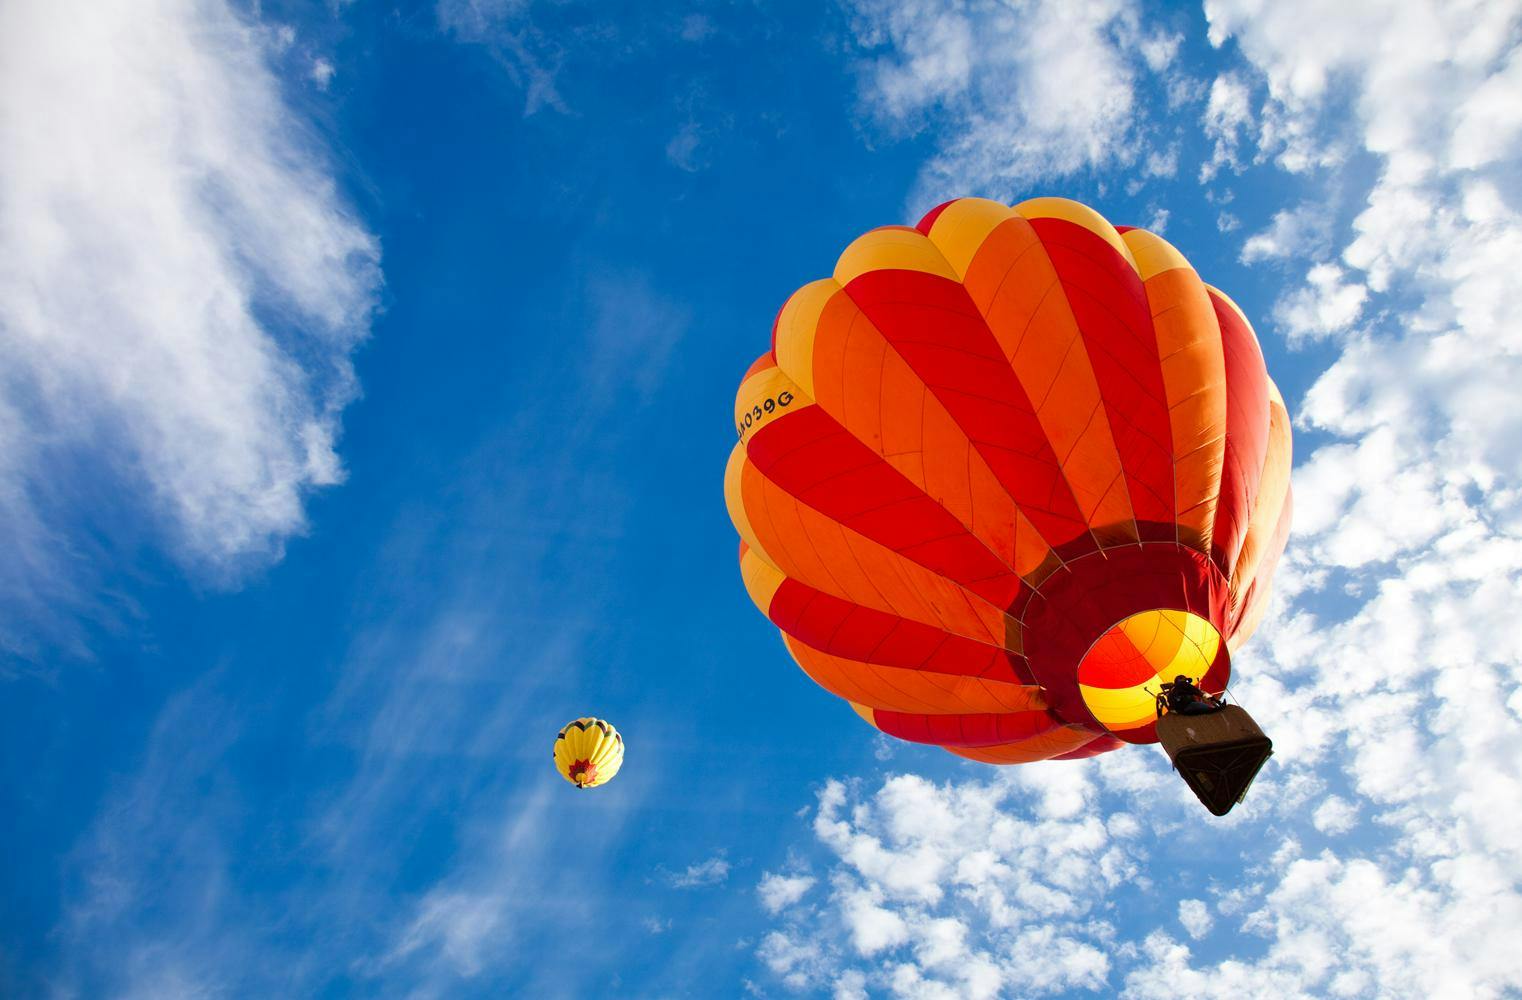 Heißluftballon Fahrt | Gruppenangebot für 10 | 3-4 Stunden